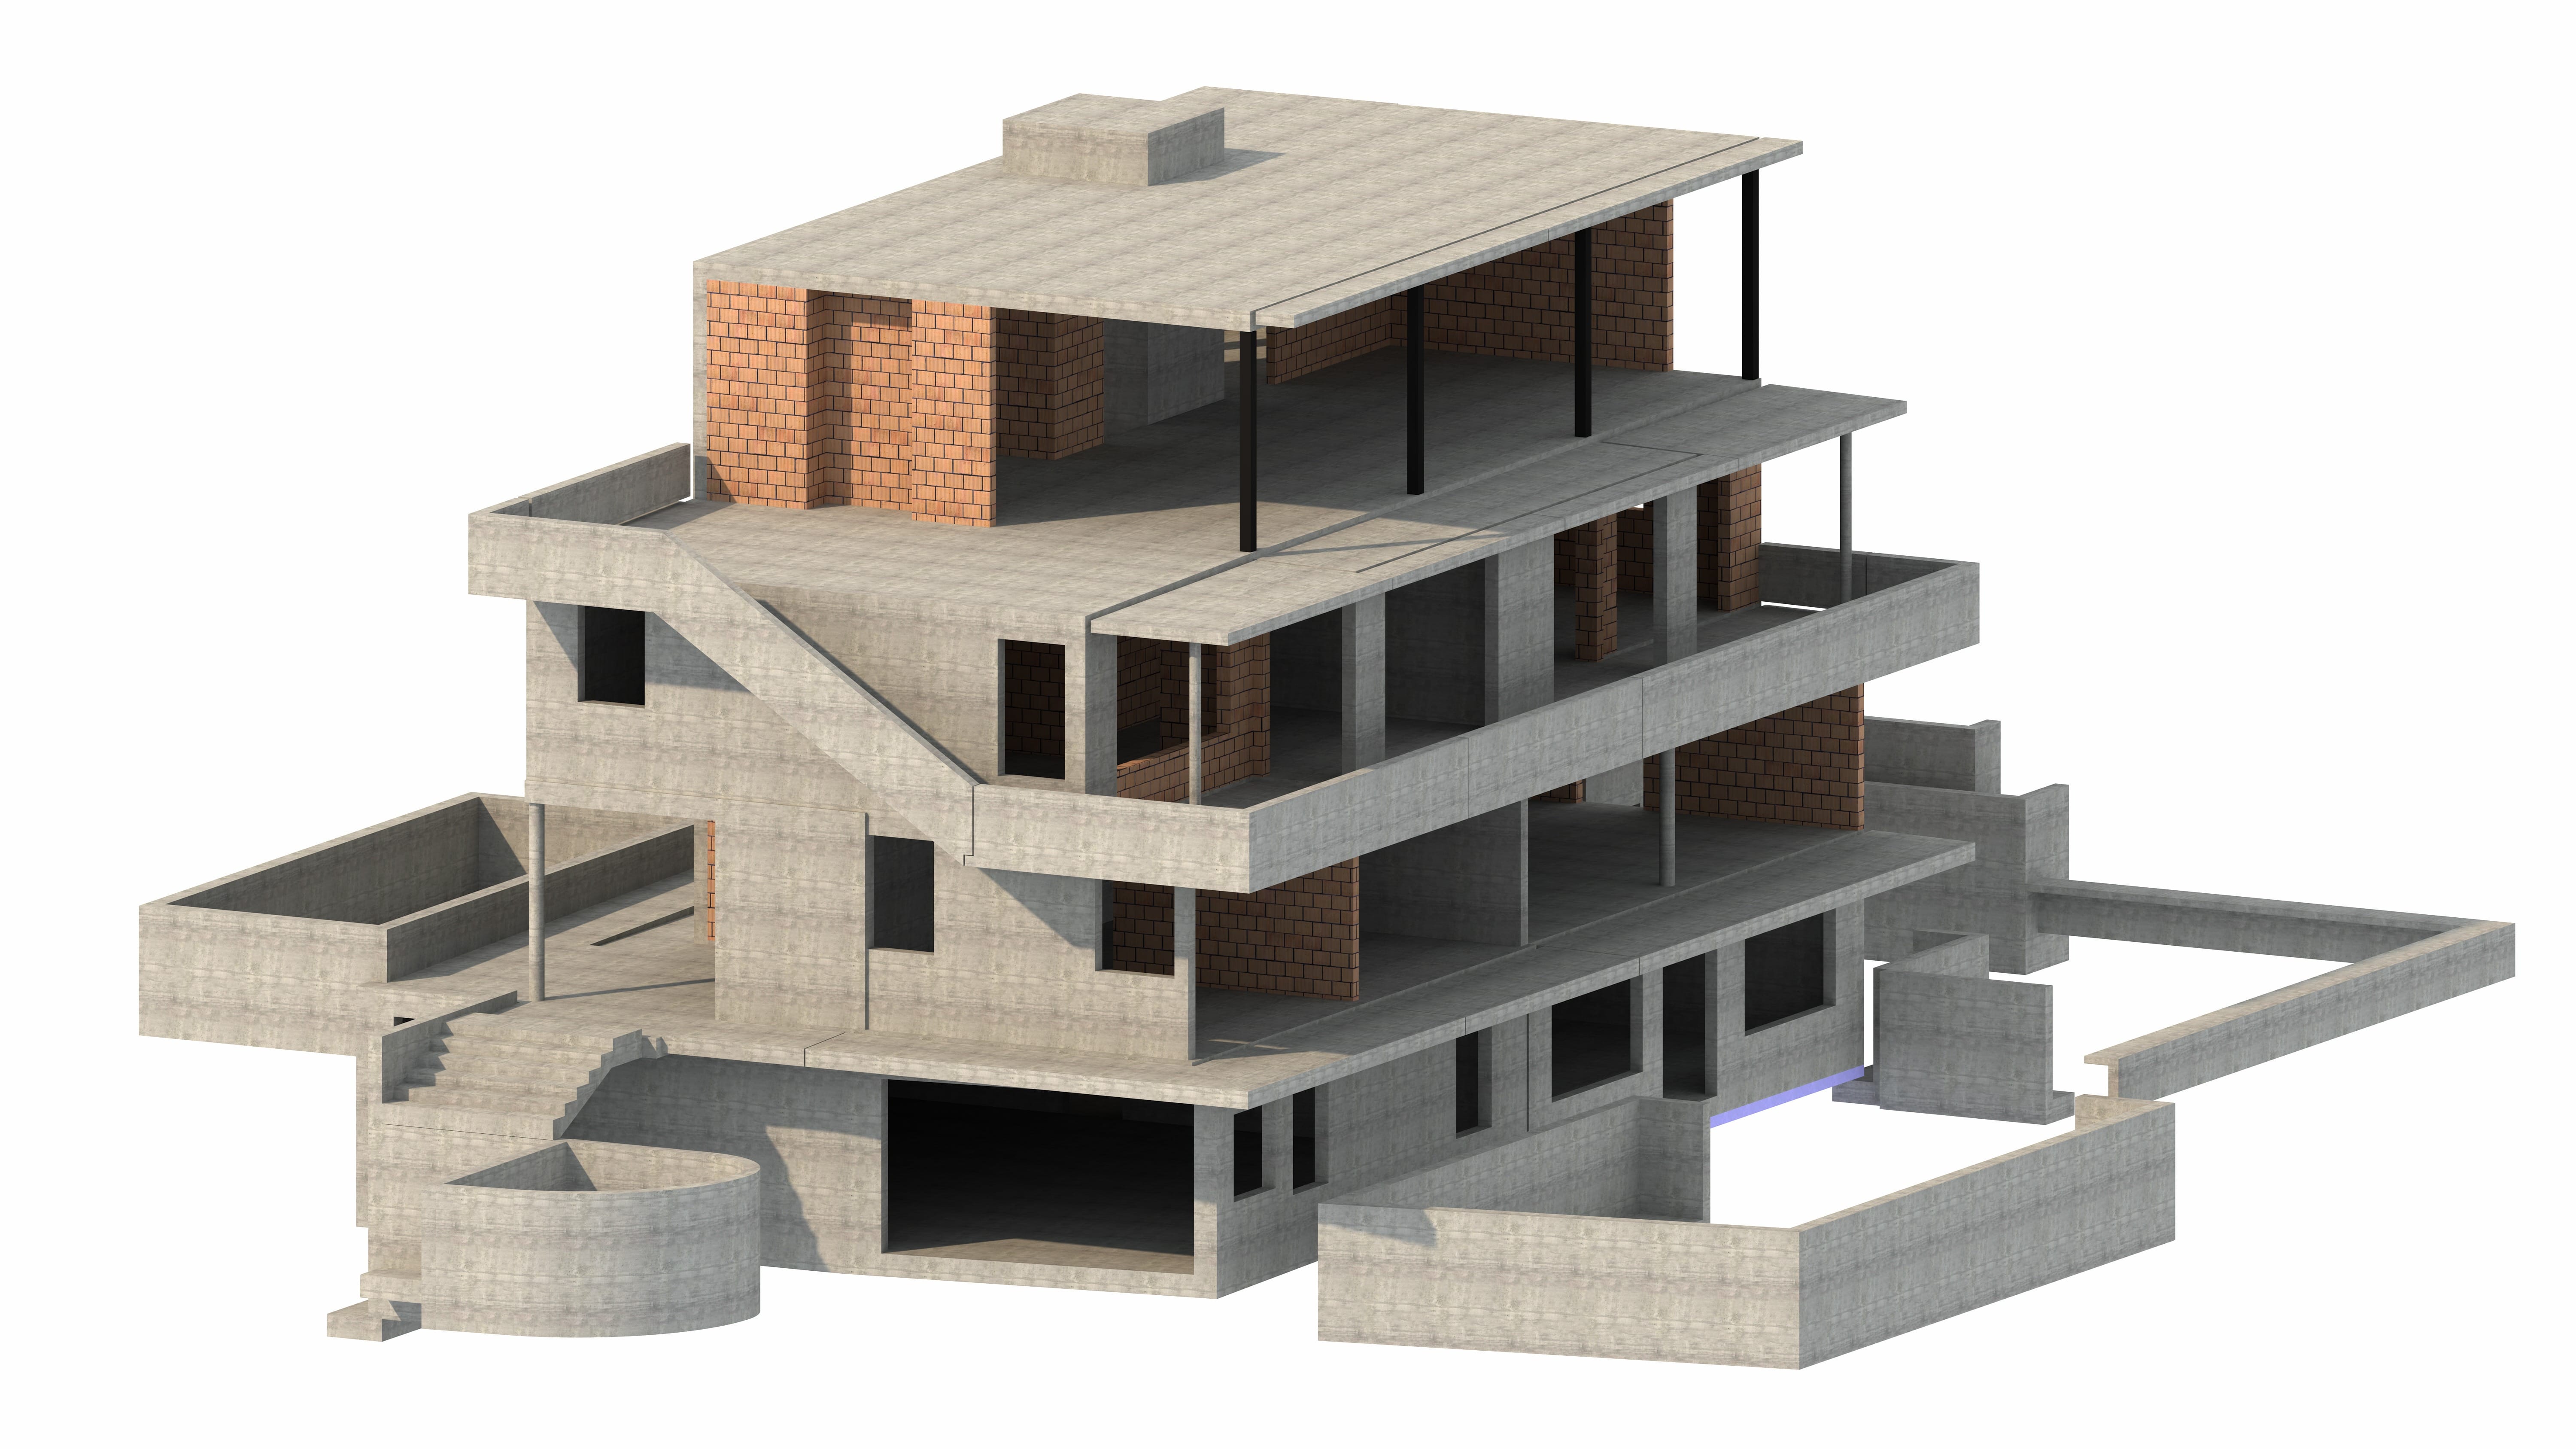 im Wohnungsbau Pläne mittels 3D-Modell erstellen